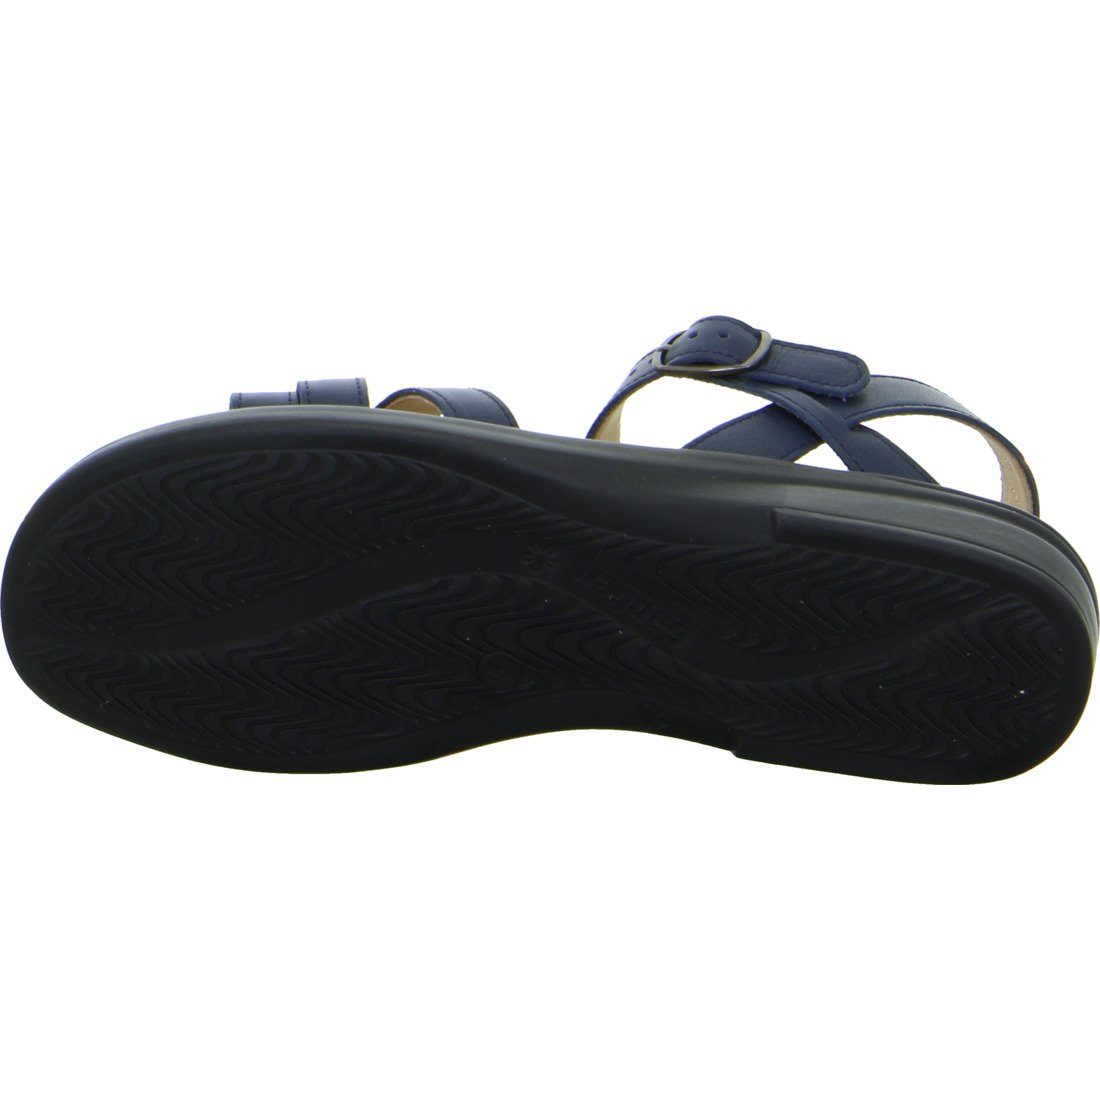 Ganter Ganter - Glattleder 048926 Sandalette Sonnica Sandalette Schuhe, blau